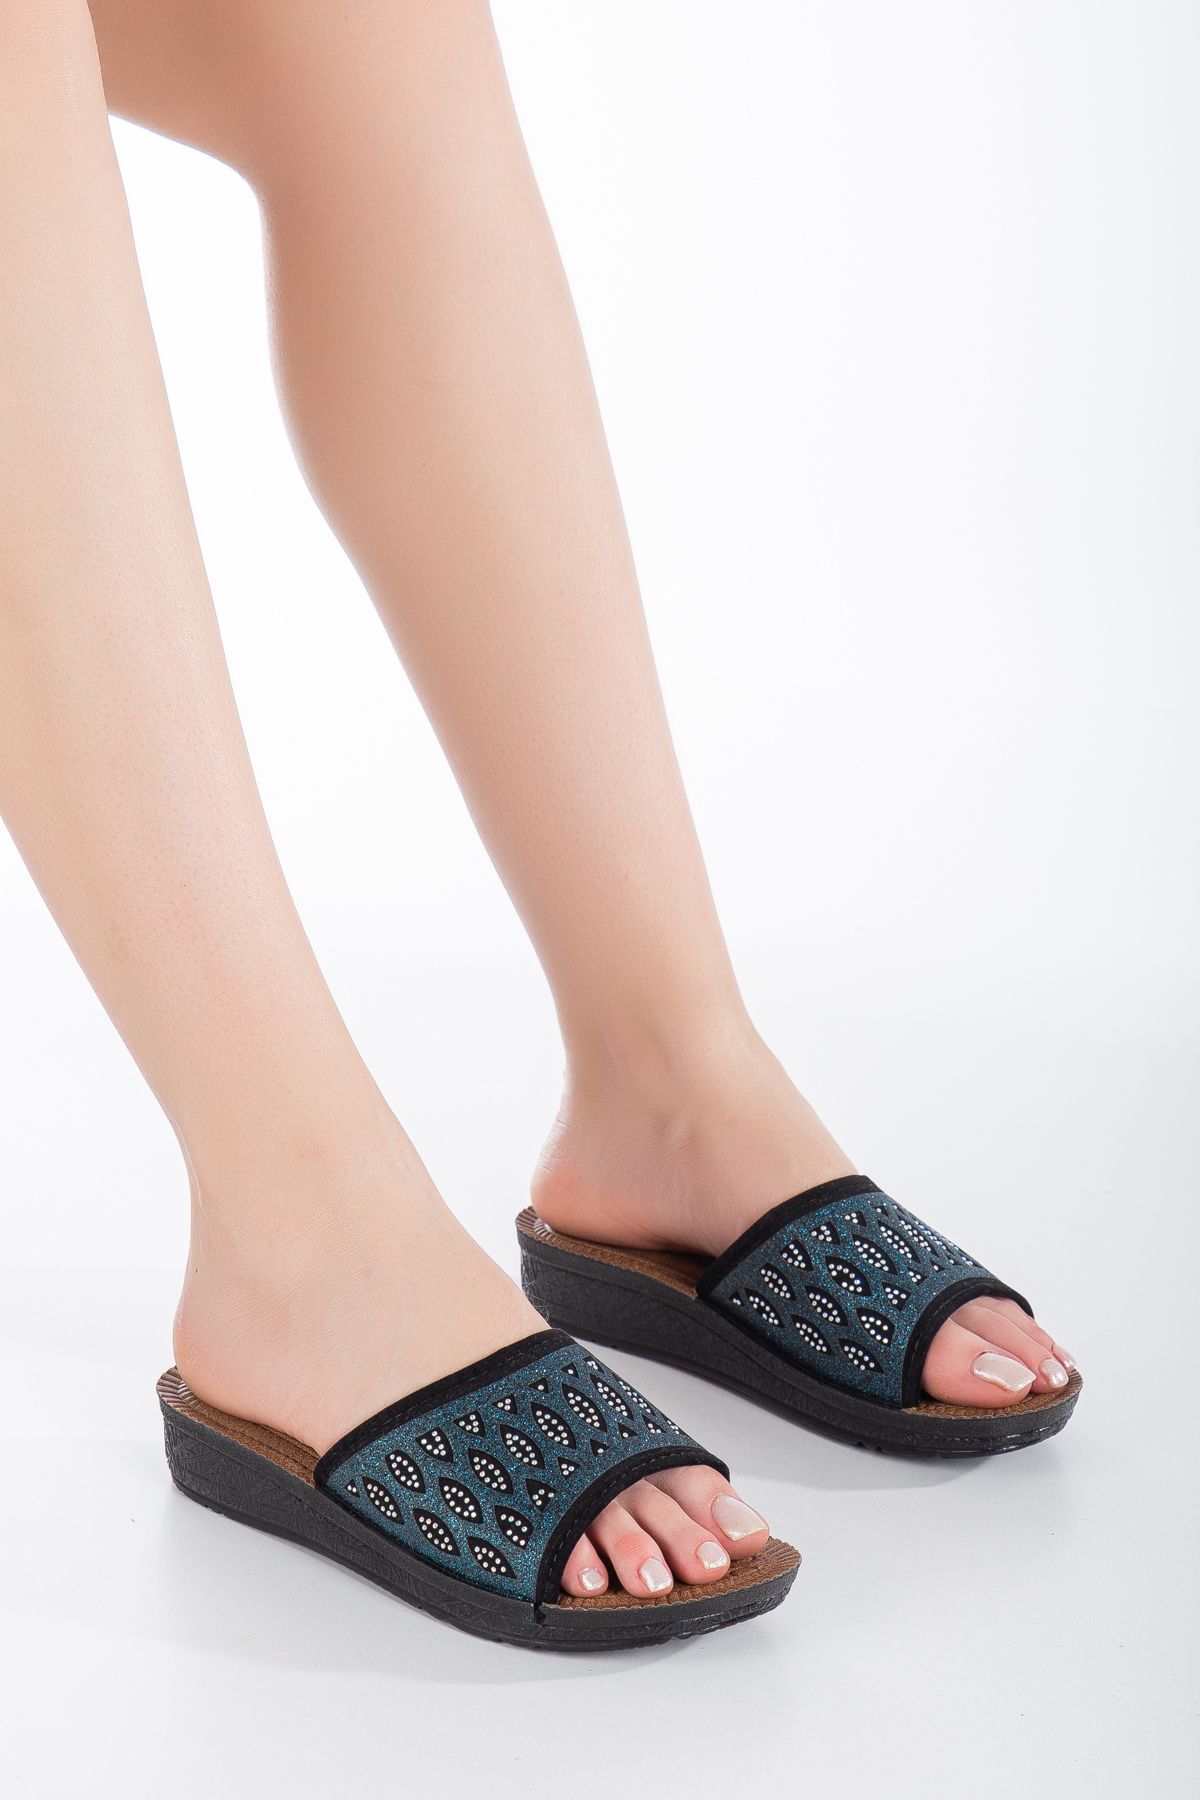 BOUIS Kadın Turkuaz Günlük Ortopedik Rahat Şık Terlik Sandalet Stiletto Ayakkabı